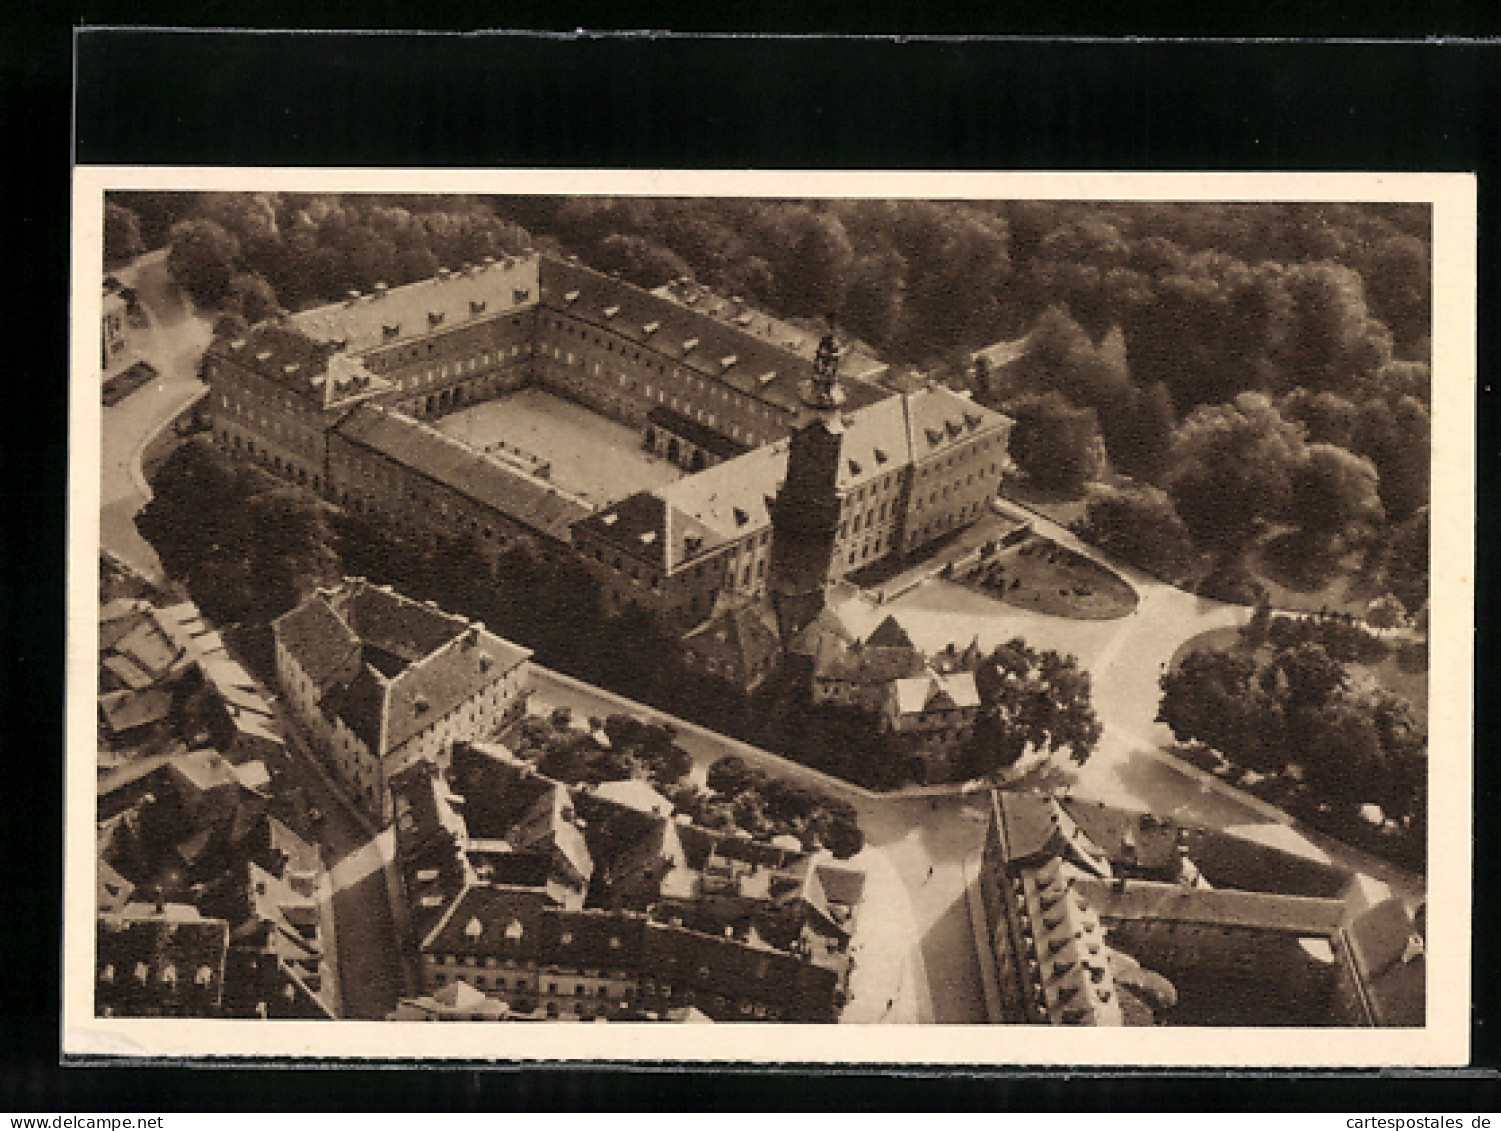 AK Das Schöne Deutschland, Bild 156: Weimar, Schloss, Luftbild, Ganzsache WHW Winterhilfswerk  - Postkarten